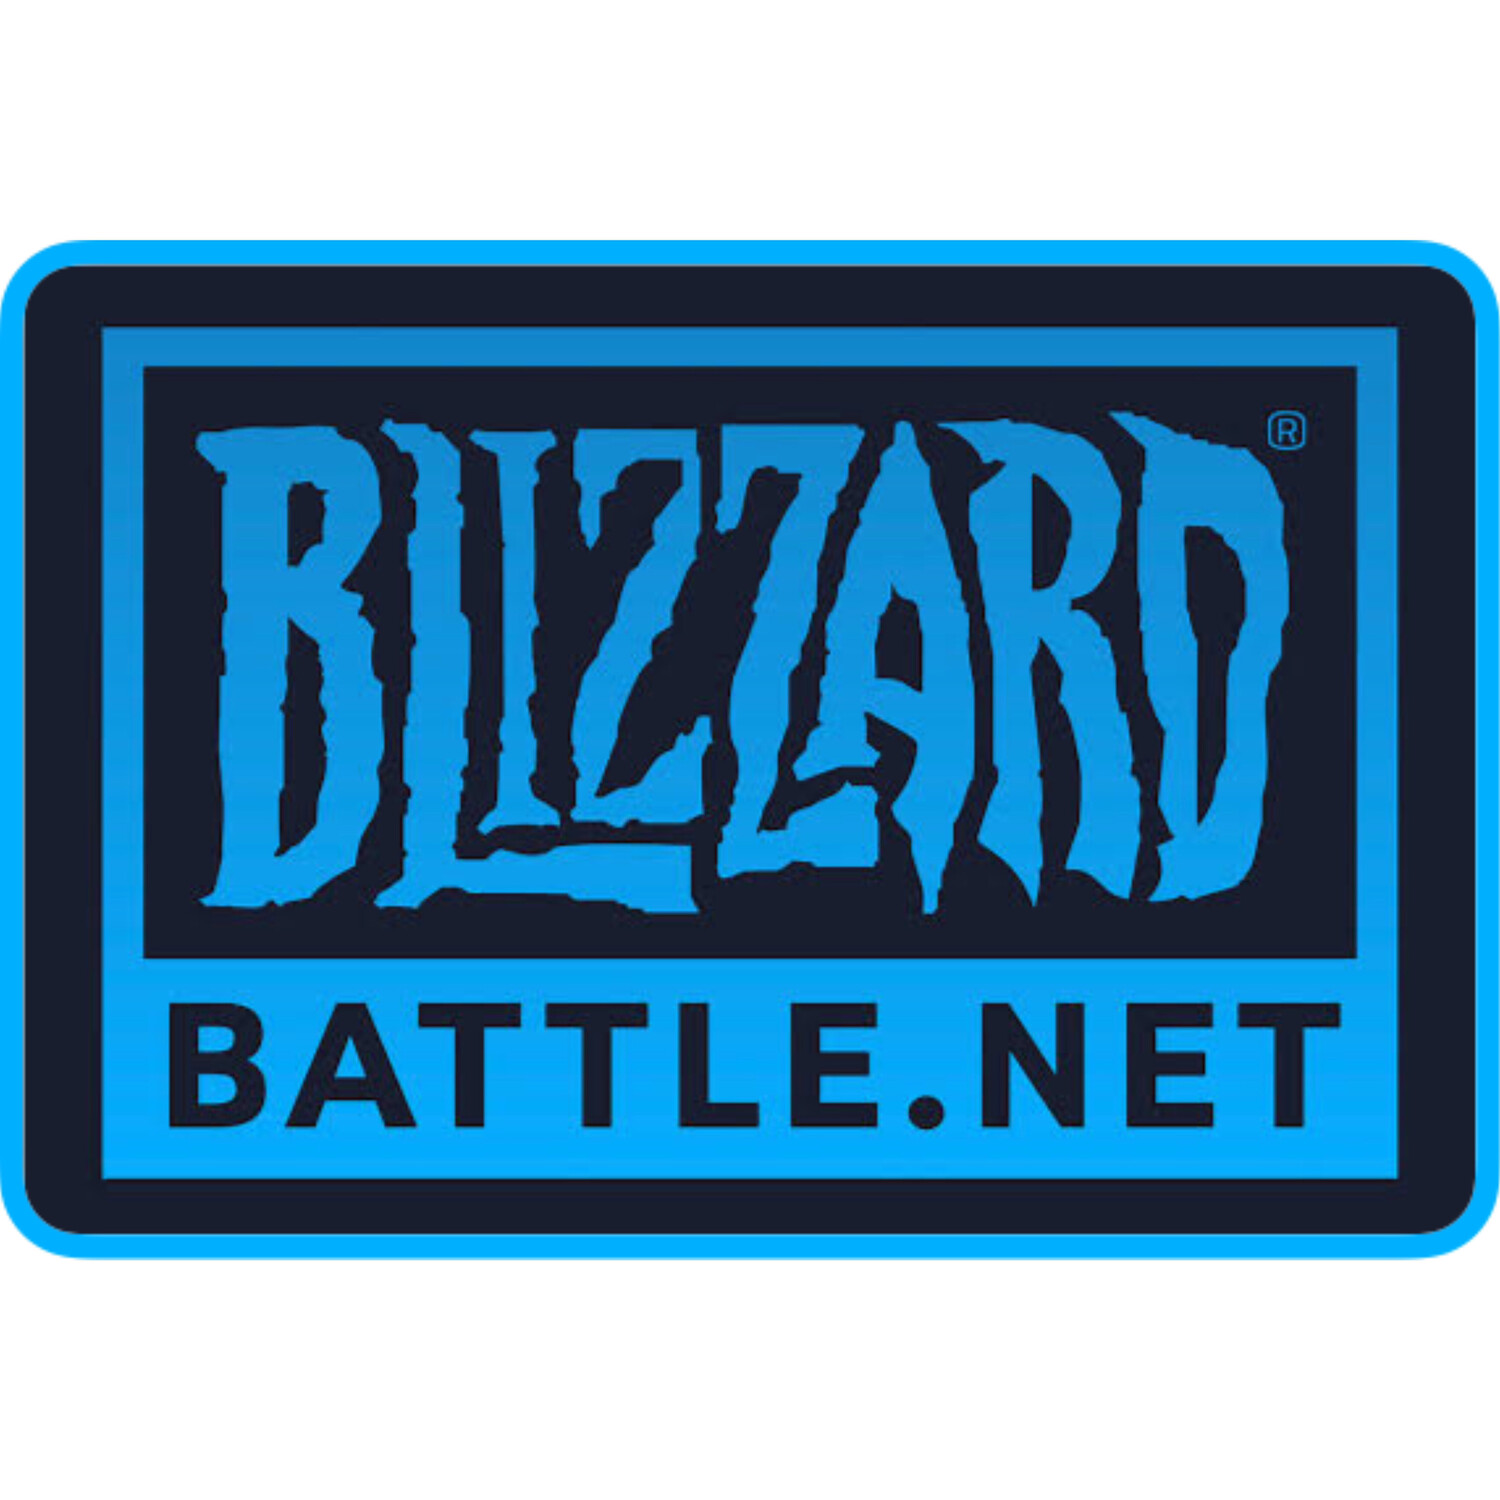 Blizzard Battlenet Gift Cards